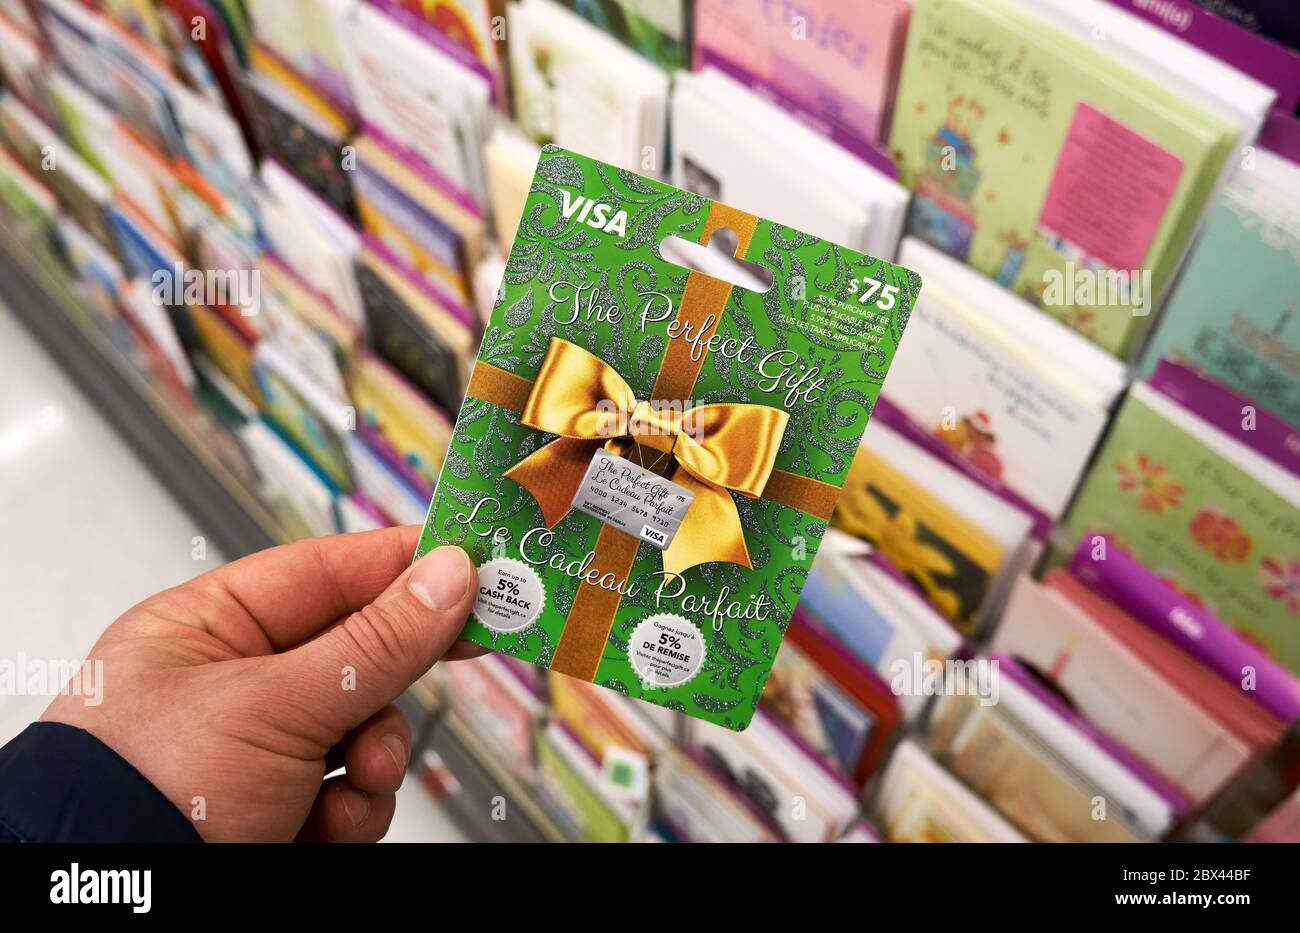 Montreal, Canadá - 03 de mayo de 2020: Tarjeta de regalo Visa en una mano  sobre un stand con tarjetas de regalo. Visa es una multinacional  estadounidense de servicios financieros corporati Fotografía